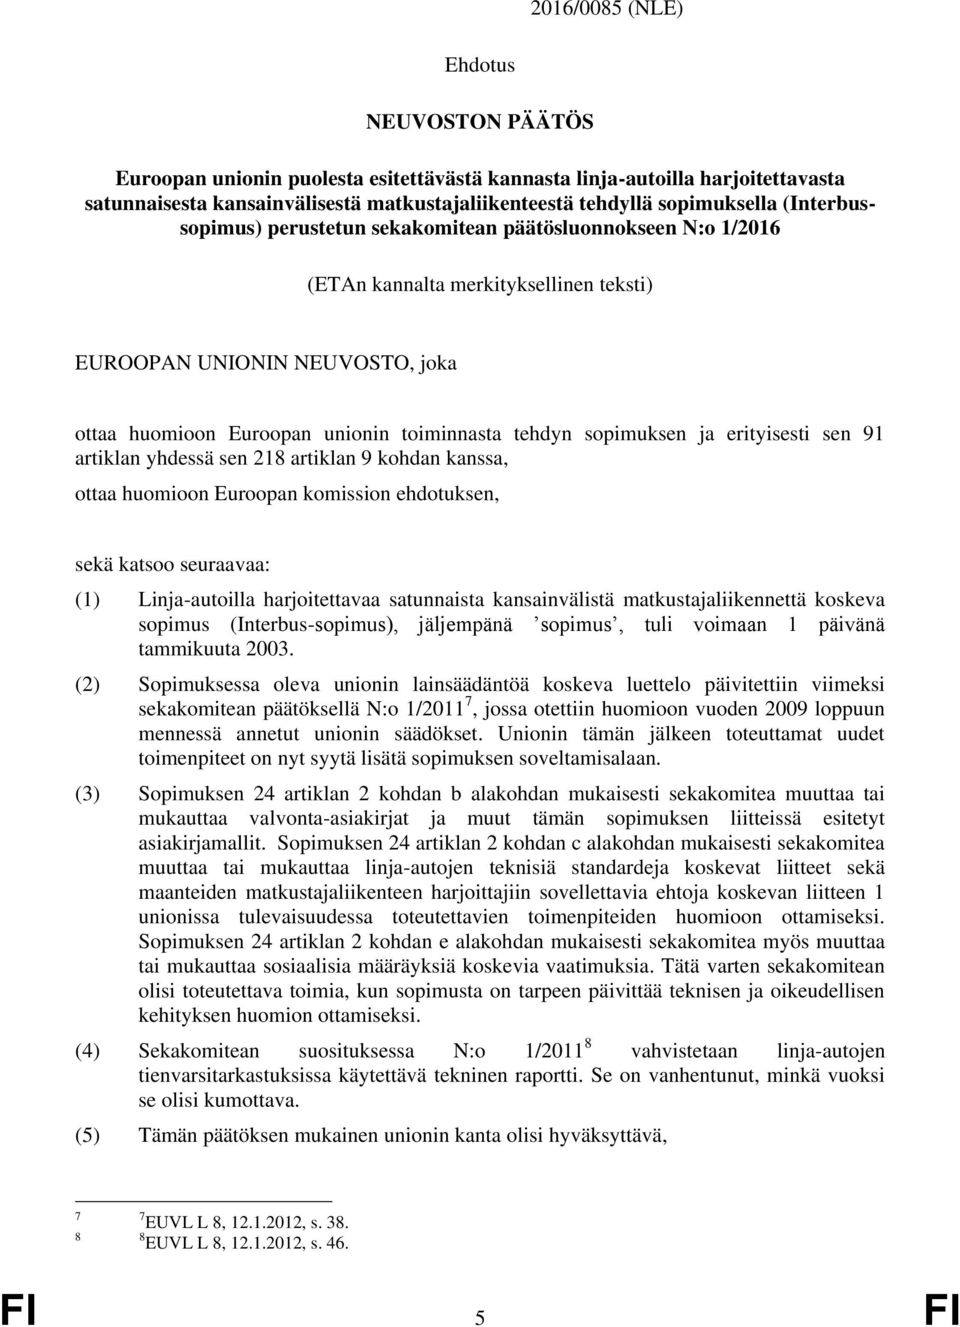 sopimuksen ja erityisesti sen 91 artiklan yhdessä sen 218 artiklan 9 kohdan kanssa, ottaa huomioon Euroopan komission ehdotuksen, sekä katsoo seuraavaa: (1) Linja-autoilla harjoitettavaa satunnaista